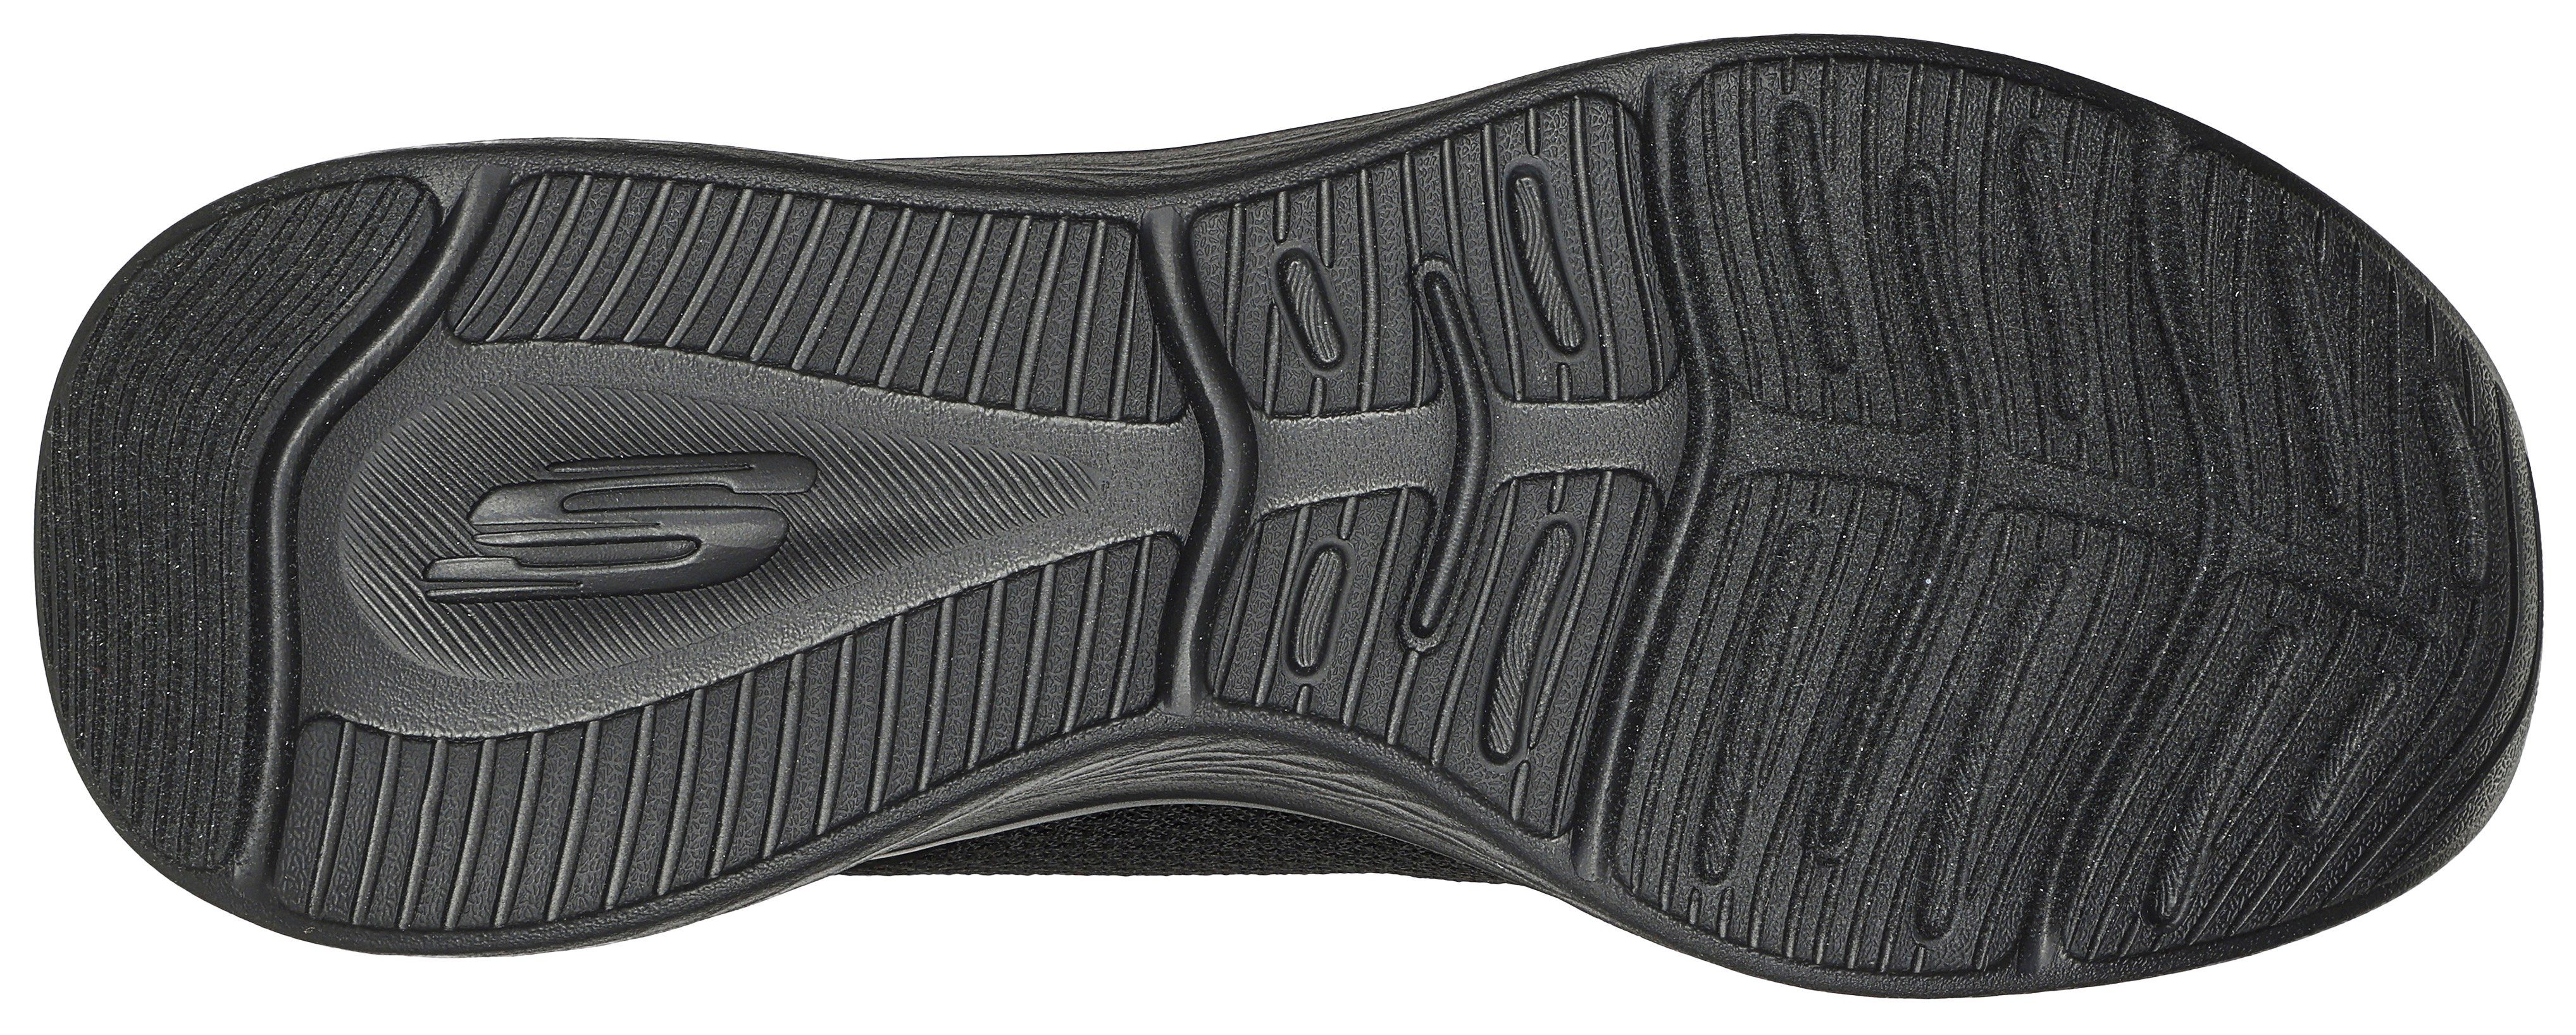 SKECH-LITE Sneaker für geeignet PRO- schwarz-uni Skechers Maschinenwäsche